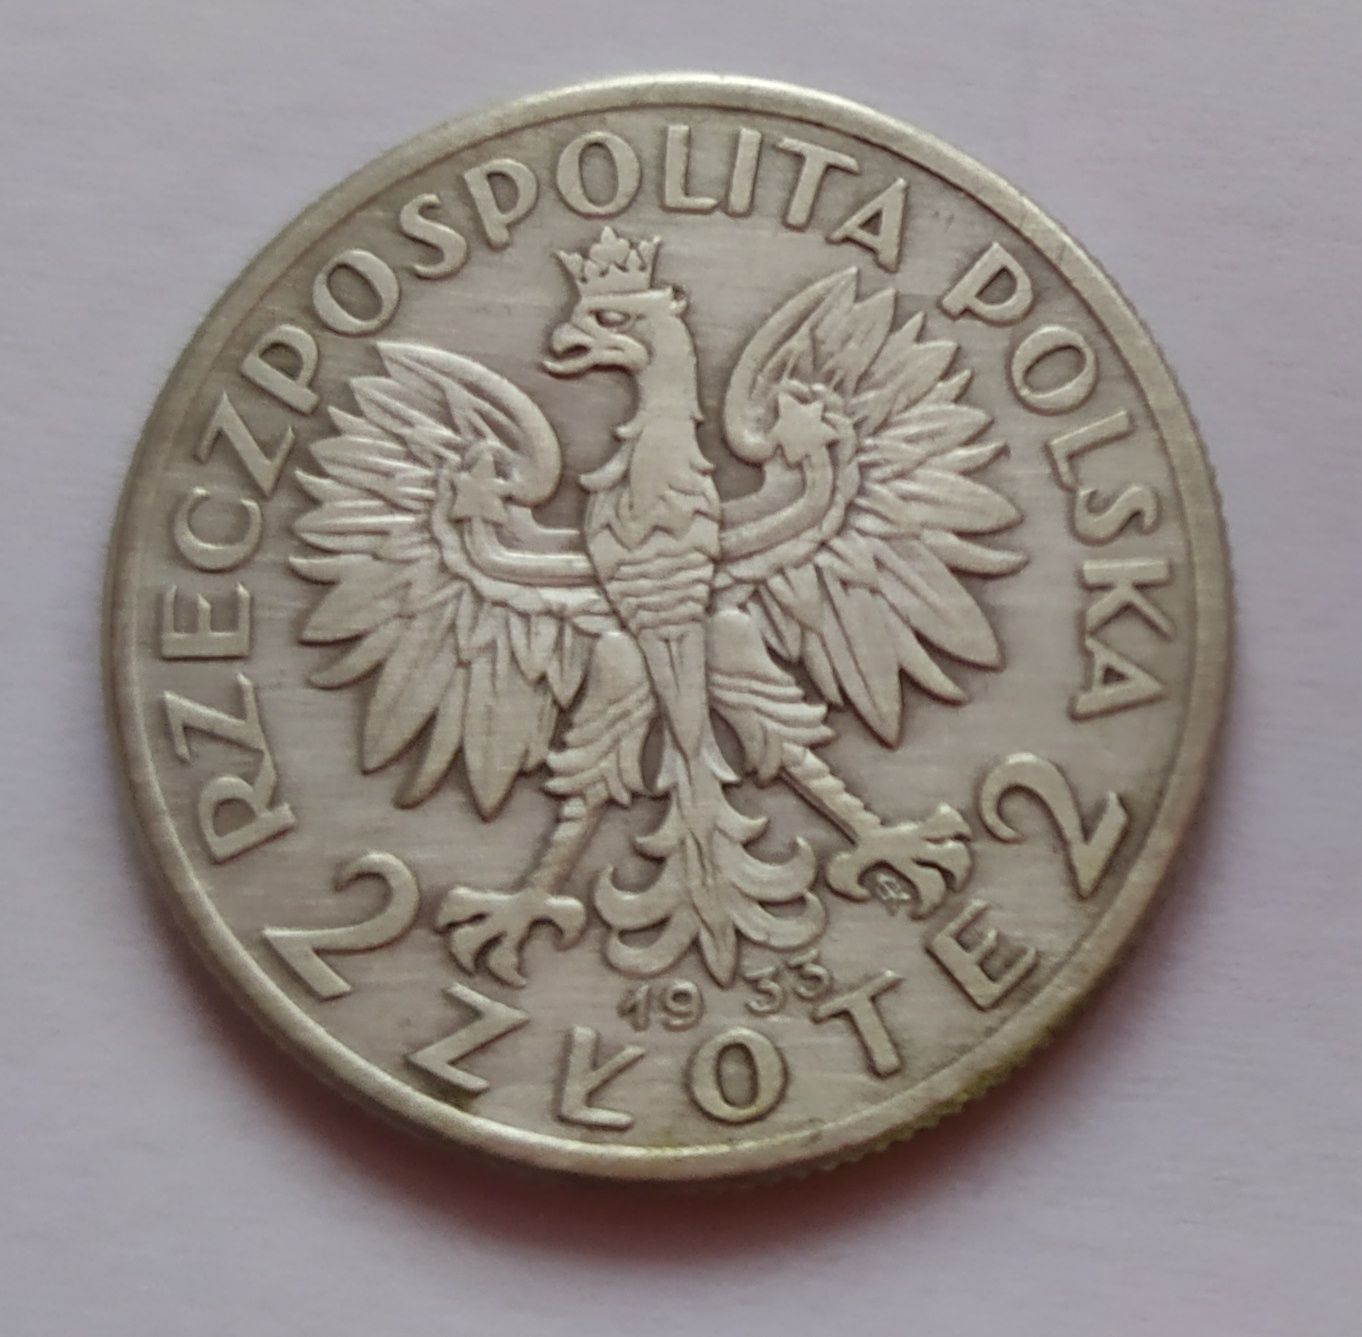 Srebrna moneta kolekcjonerska - 2 zł - Głowa Kobiety Polonii z 1933 r.